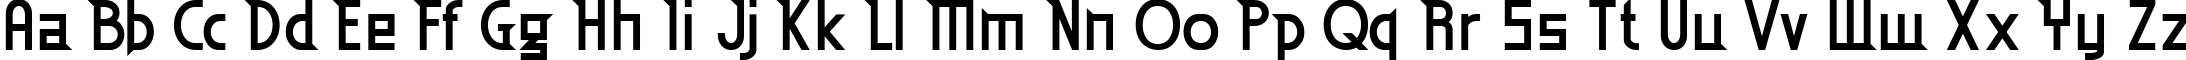 Пример написания английского алфавита шрифтом Eden Mills Bold